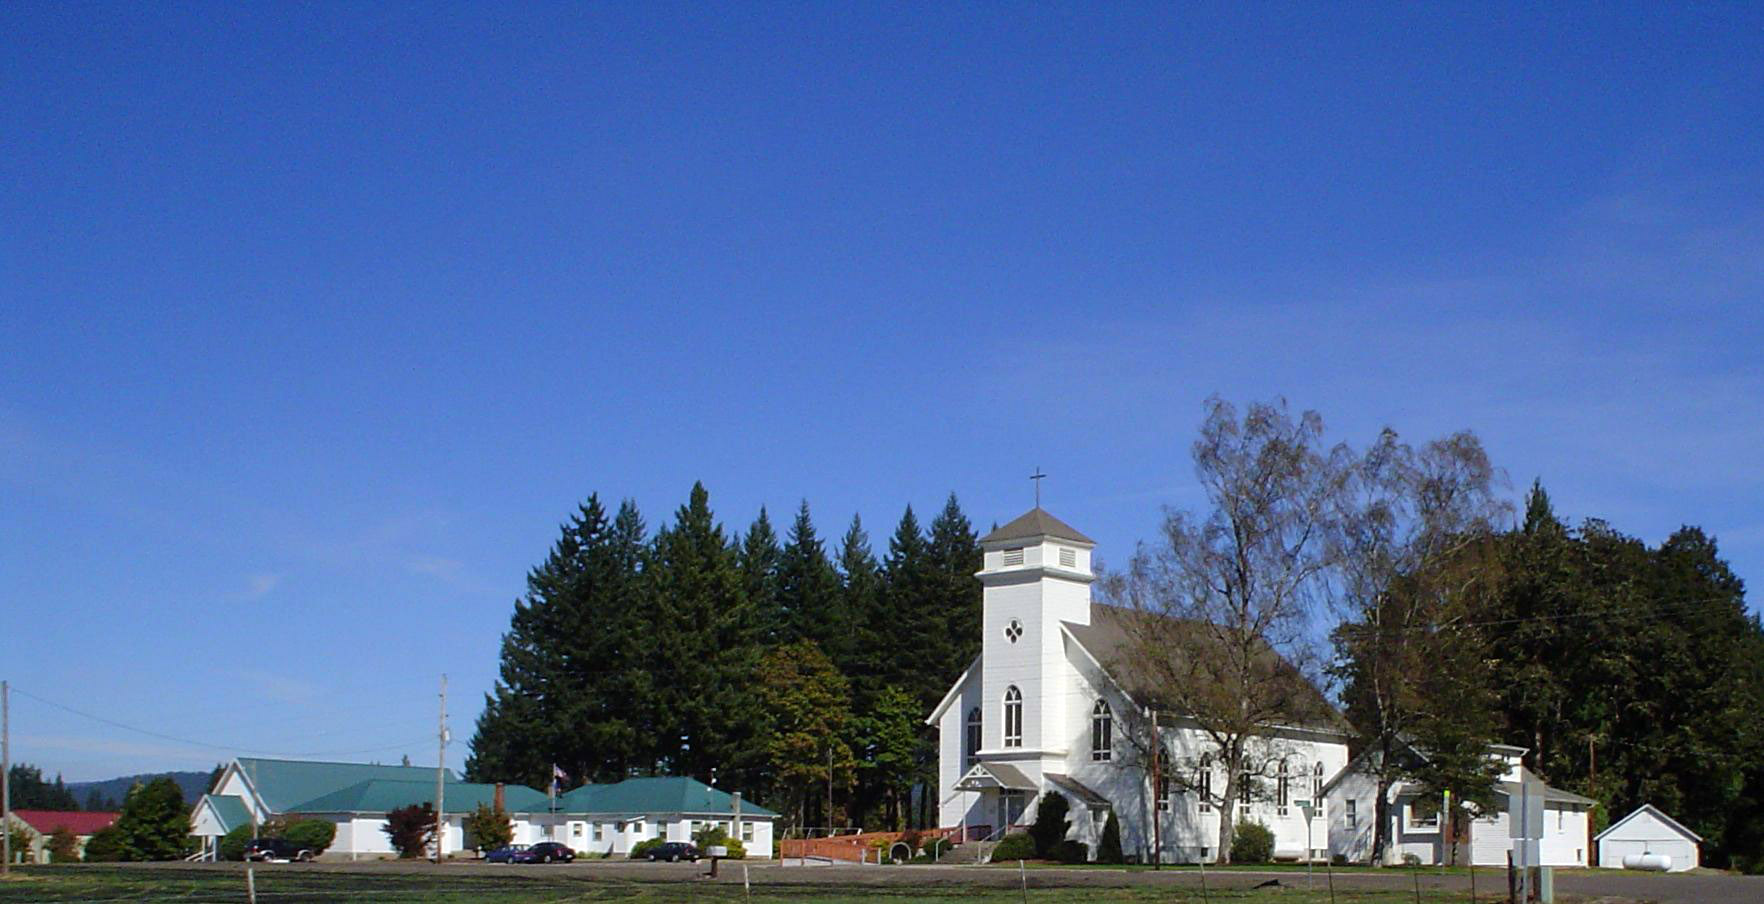 Lourdes School and church in Stayton, Oregon (22/126). 